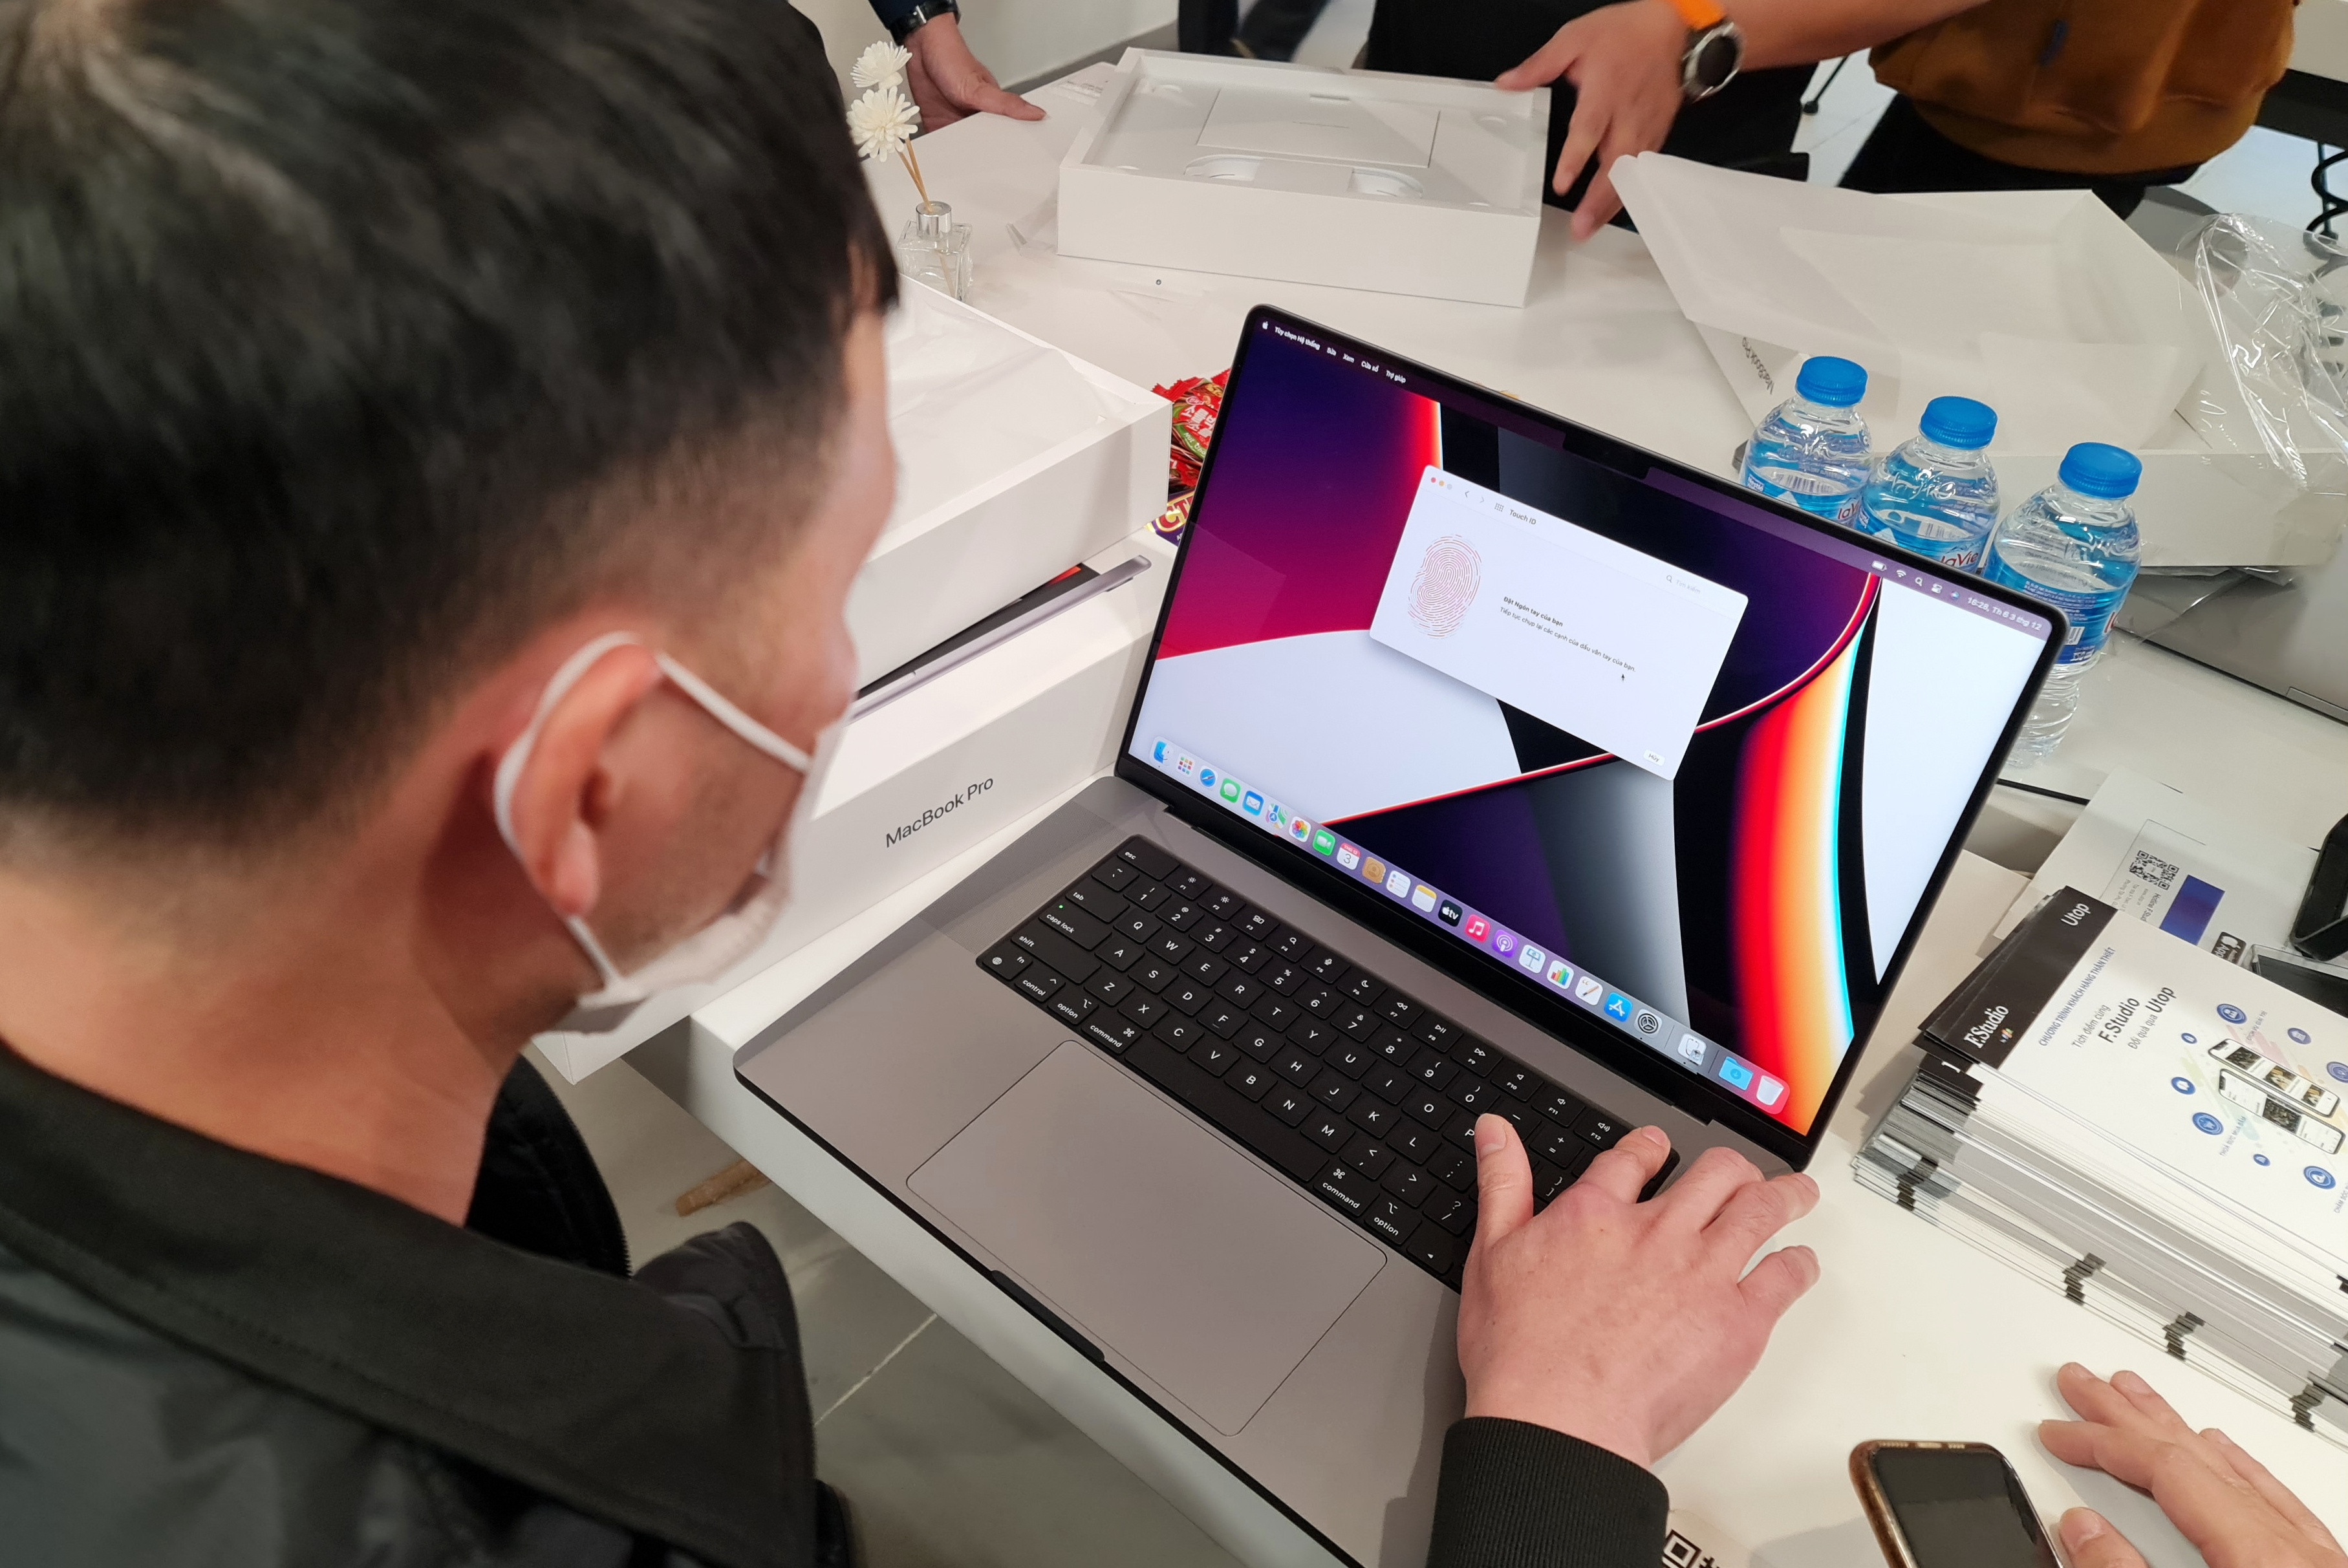 Sắp có MacBook Apple sản xuất tại Việt Nam